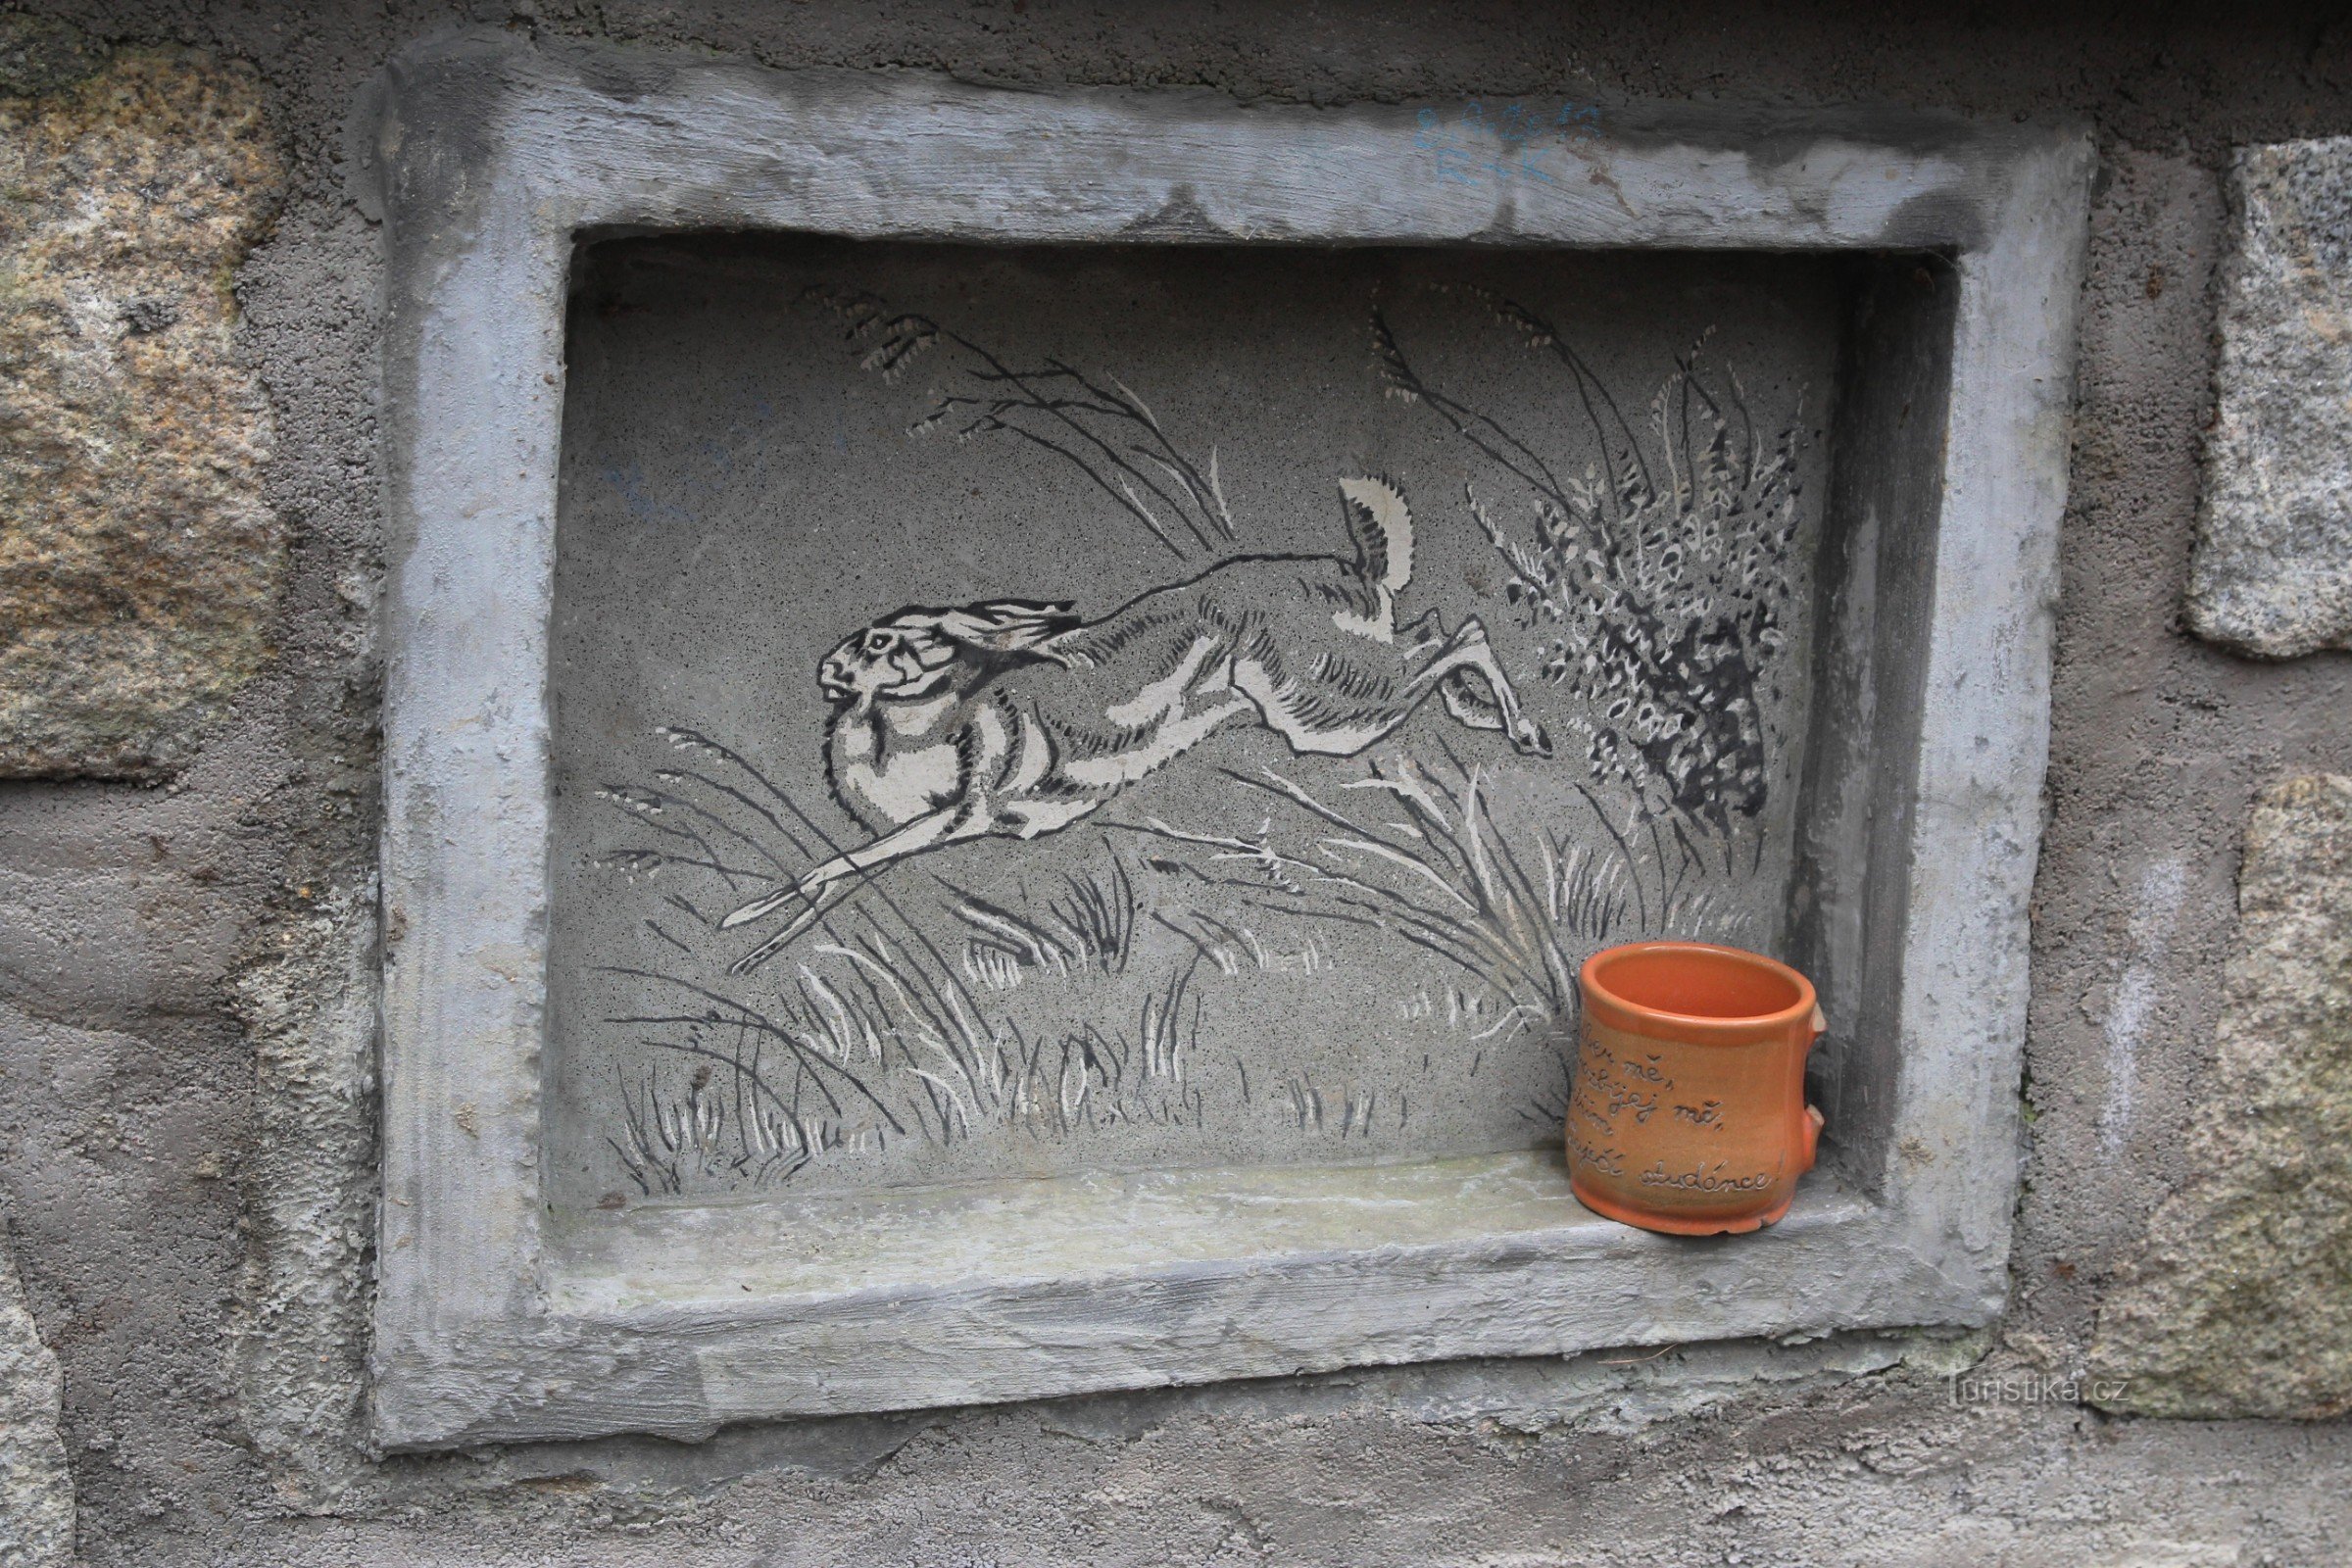 うさぎの絵が描かれた井戸の詳細